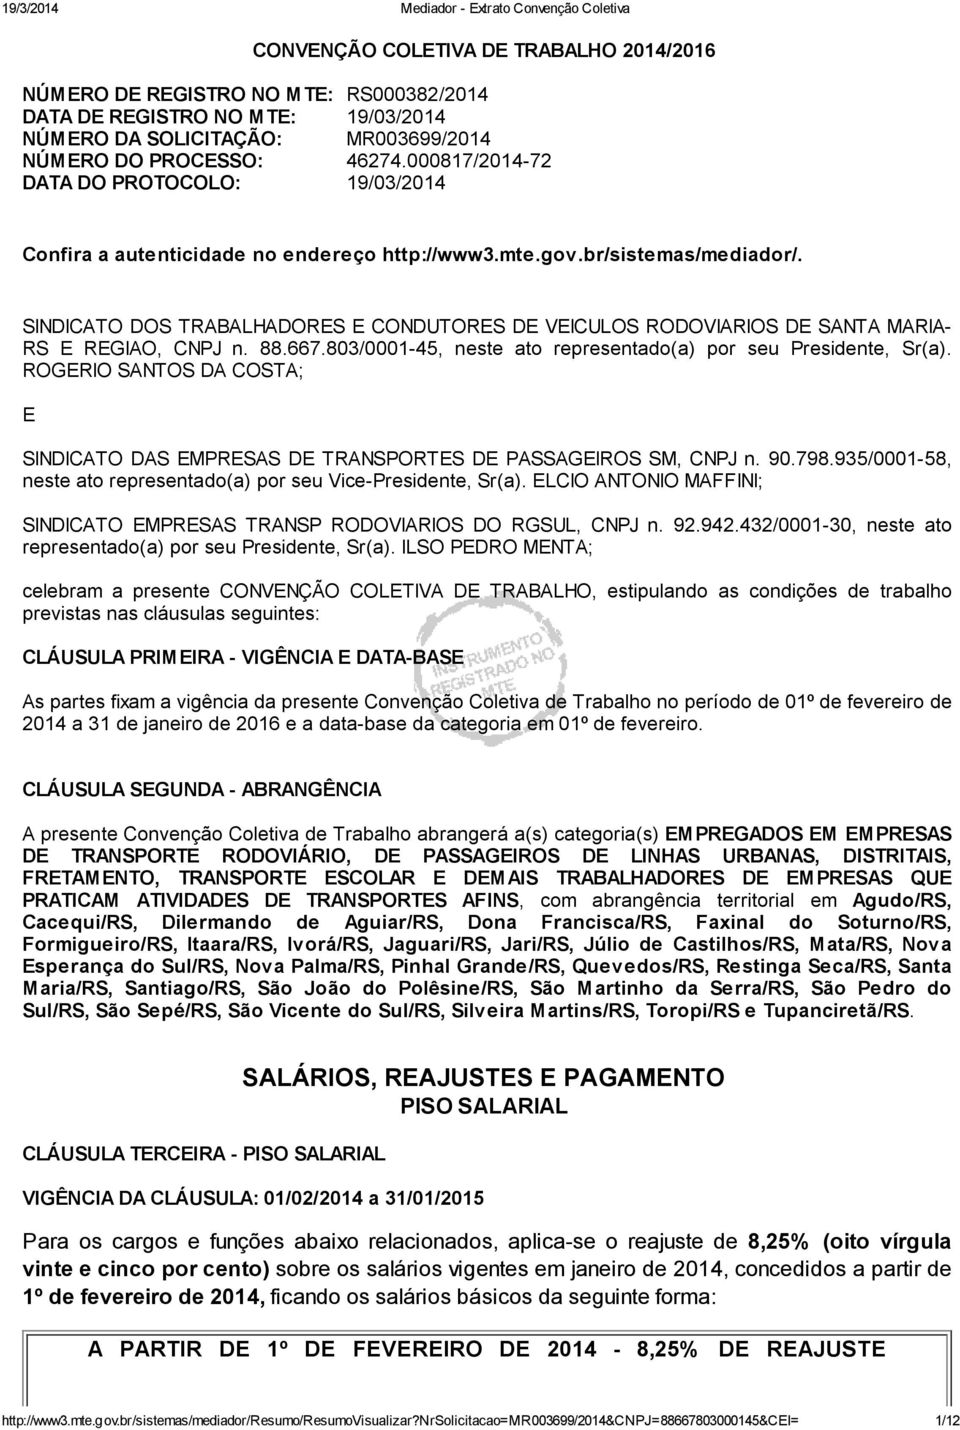 SINDICATO DOS TRABALHADORES E CONDUTORES DE VEICULOS RODOVIARIOS DE SANTA MARIA- RS E REGIAO, CNPJ n. 88.667.803/0001-45, neste ato representado(a) por seu Presidente, Sr(a).